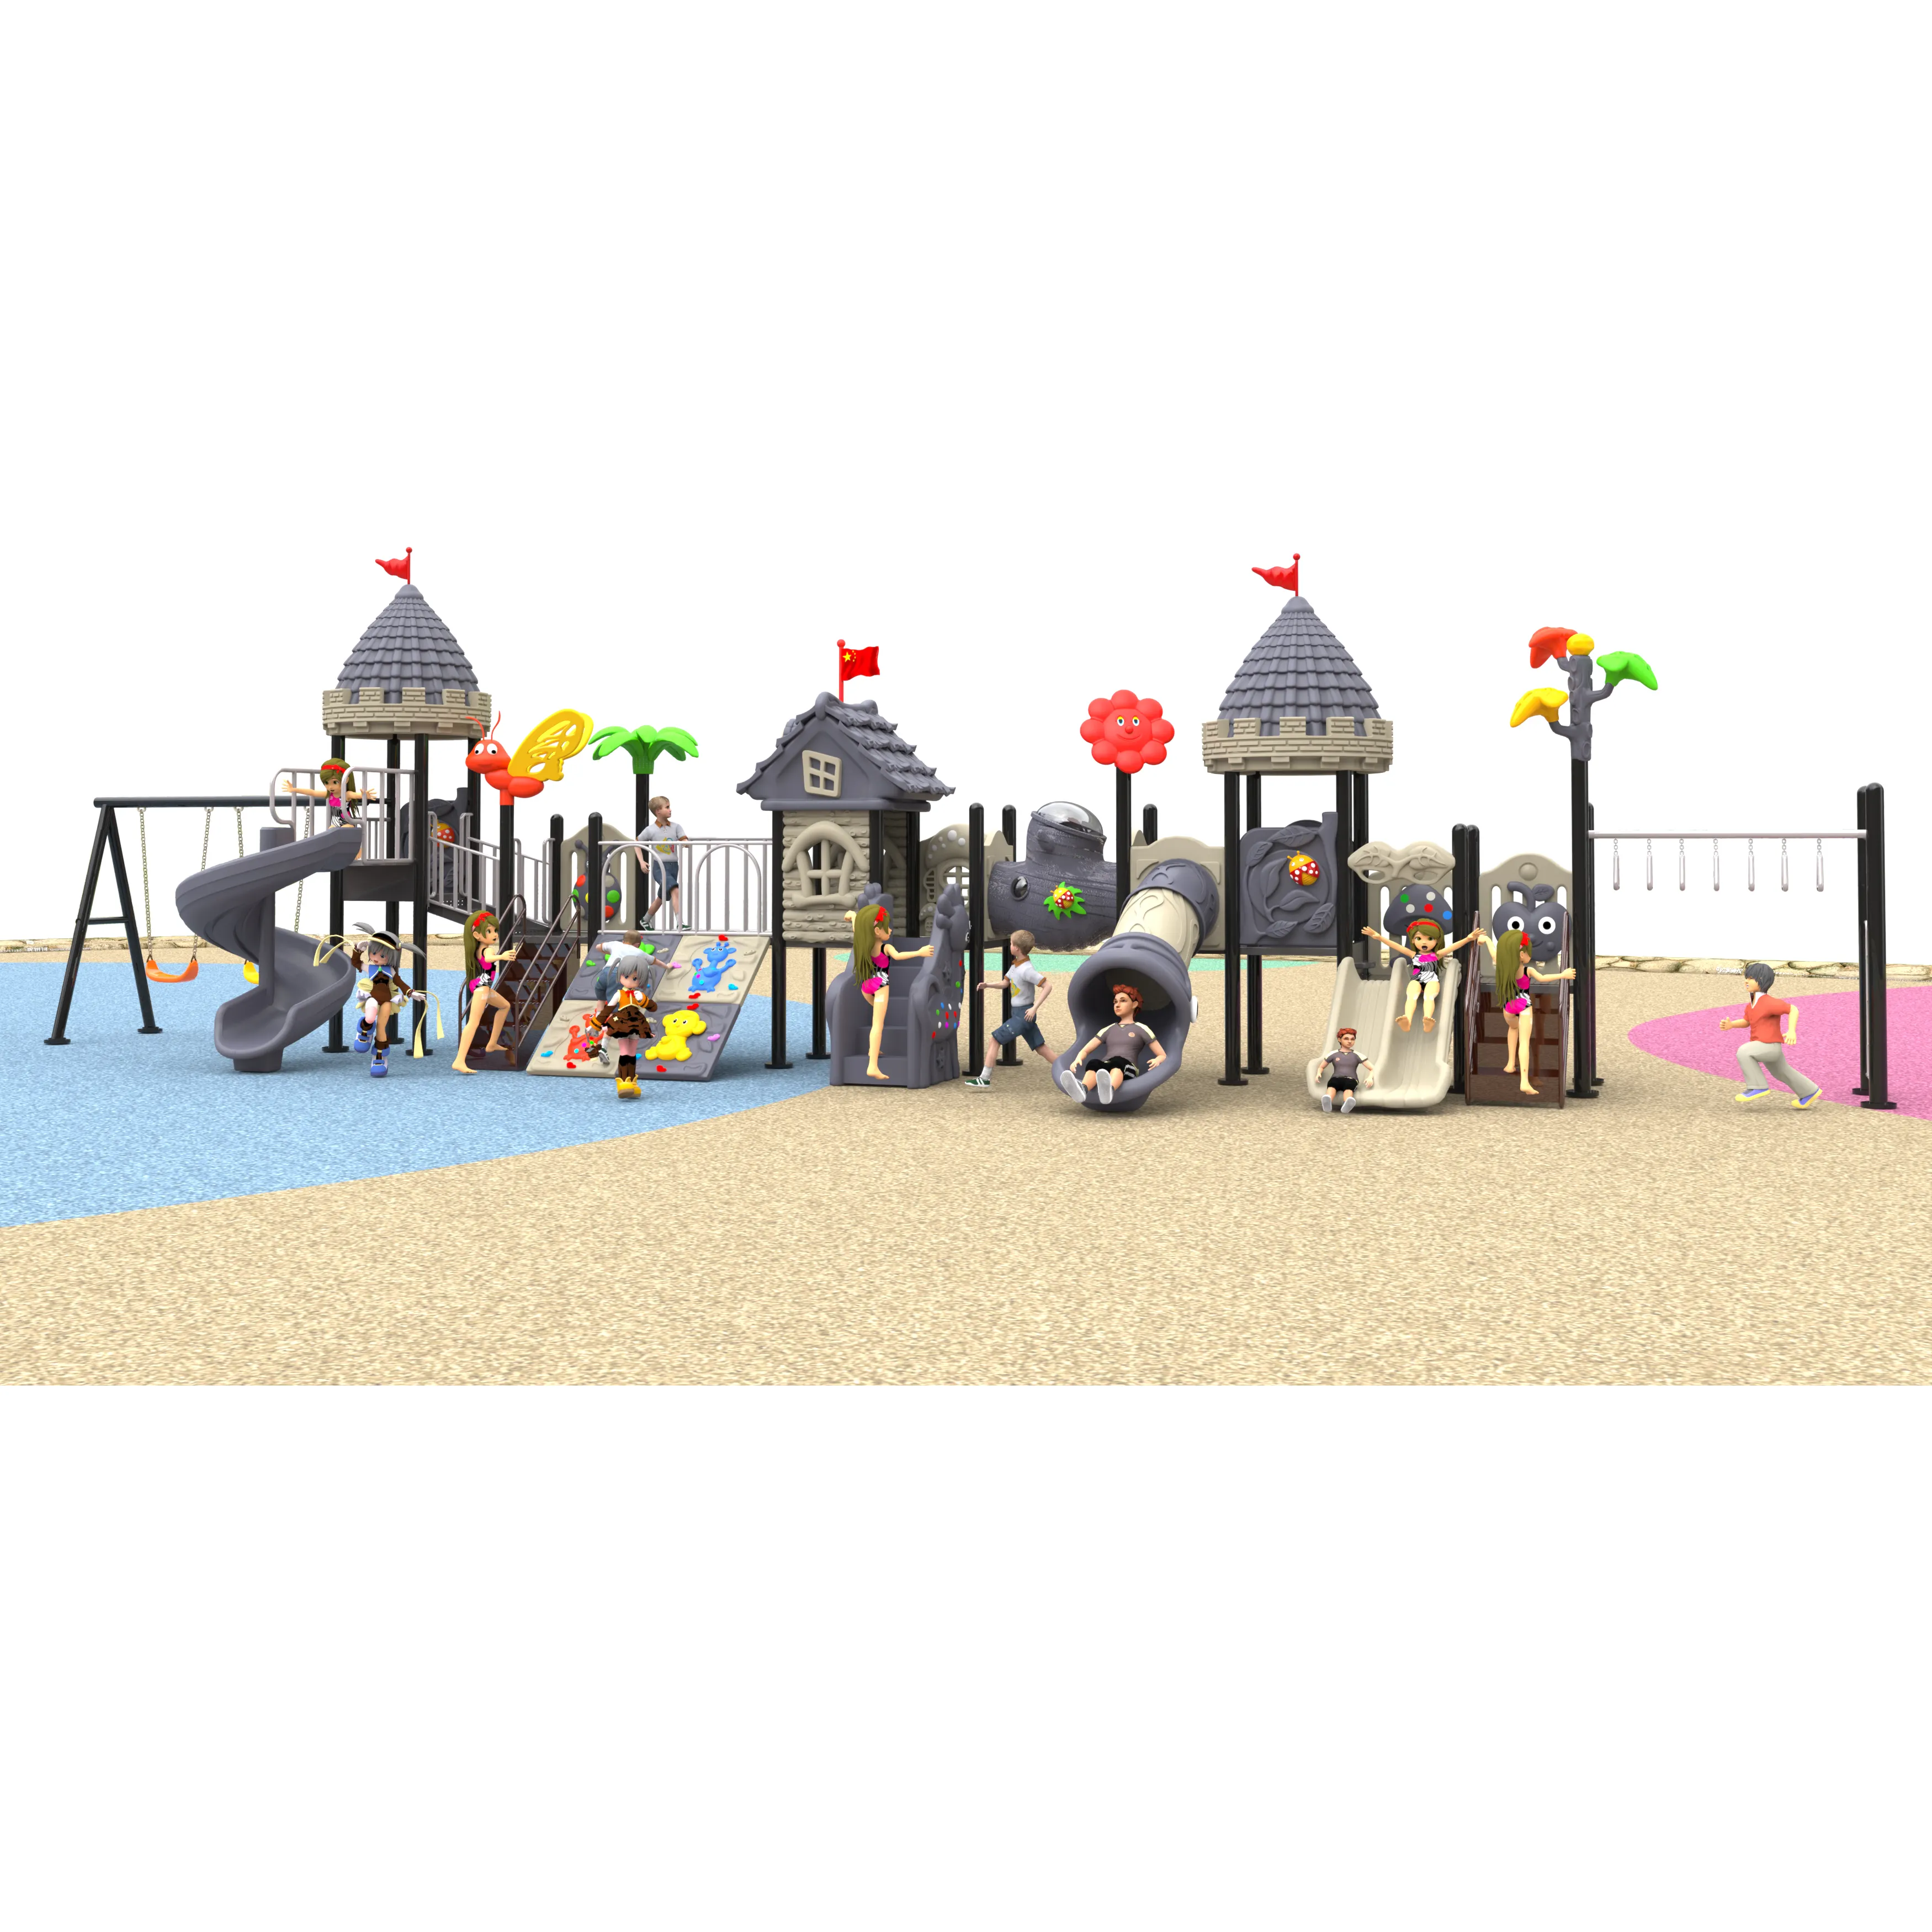 Terrain de jeux en plastique pour enfants, équipement de jardin, jouet d'extérieur, toboggan, parc d'attractions, petite taille